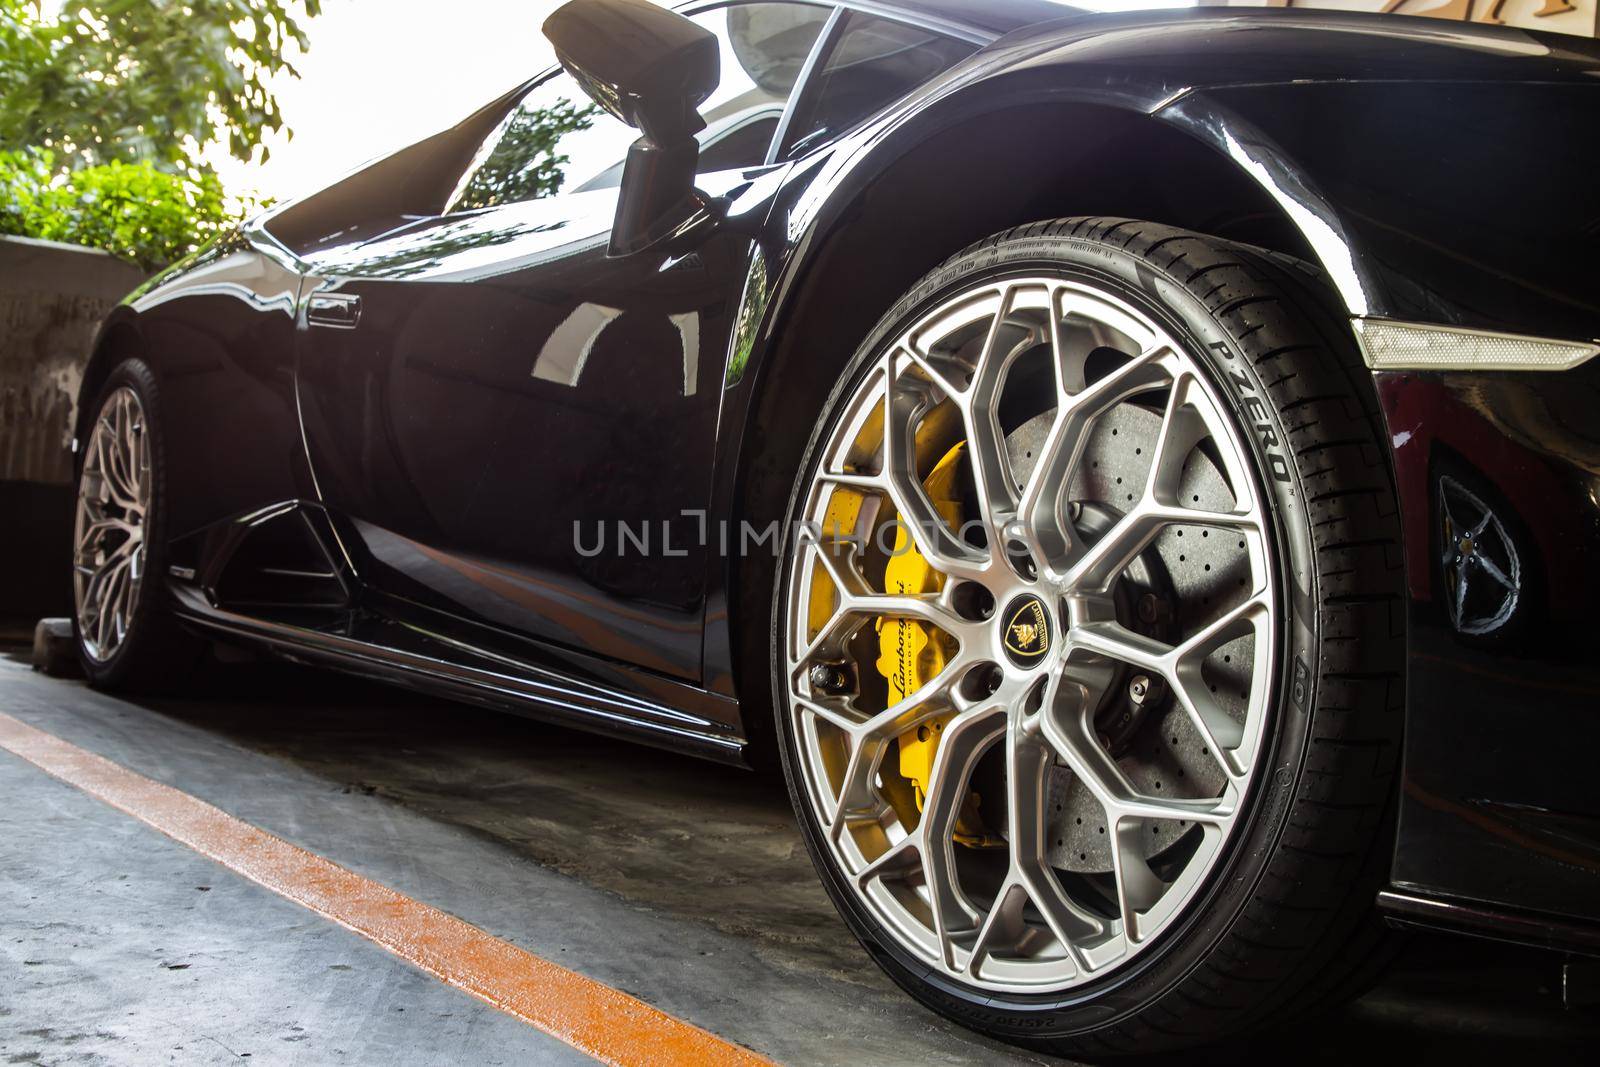 Bangkok, Thailand - 06 Jan 2021 : Close-up of Wheel of Black Lamborghini Sports Car. Lamborghini is Italian sports car. Selective focus.